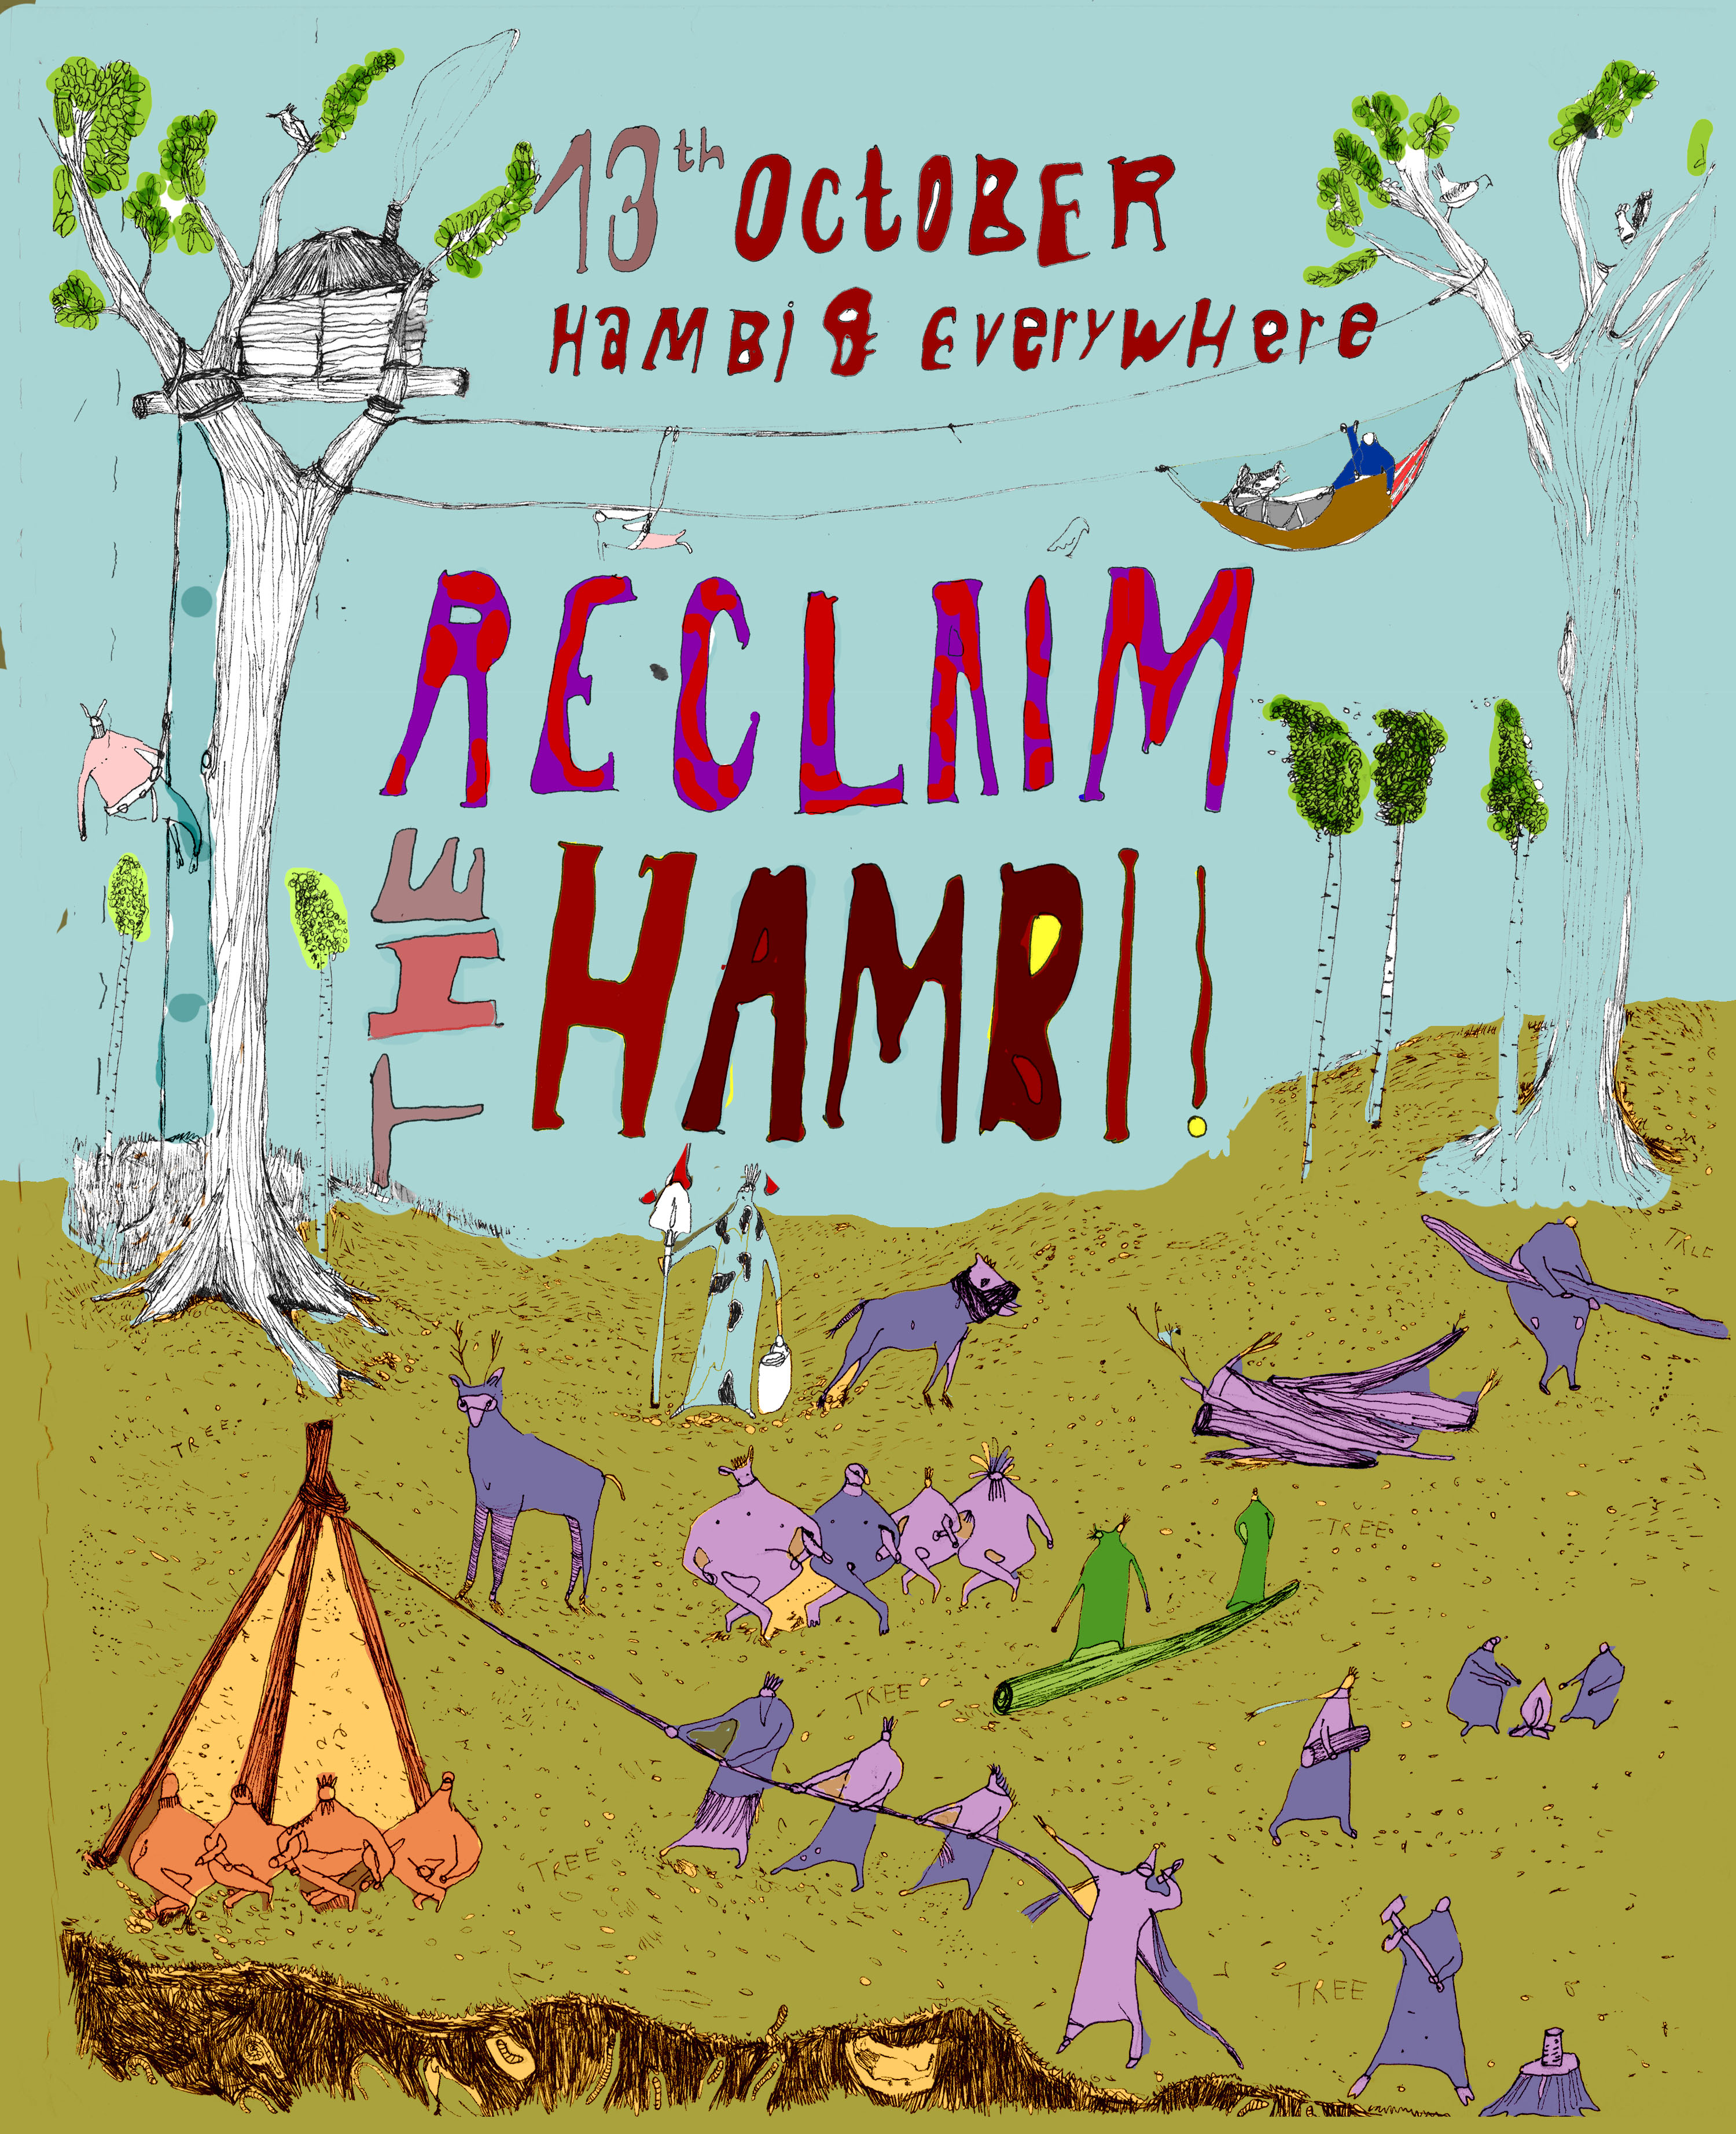 You are currently viewing Reclaim the Hambi! – Reflektionen zu Strategie und Aufruf zu Aktionen